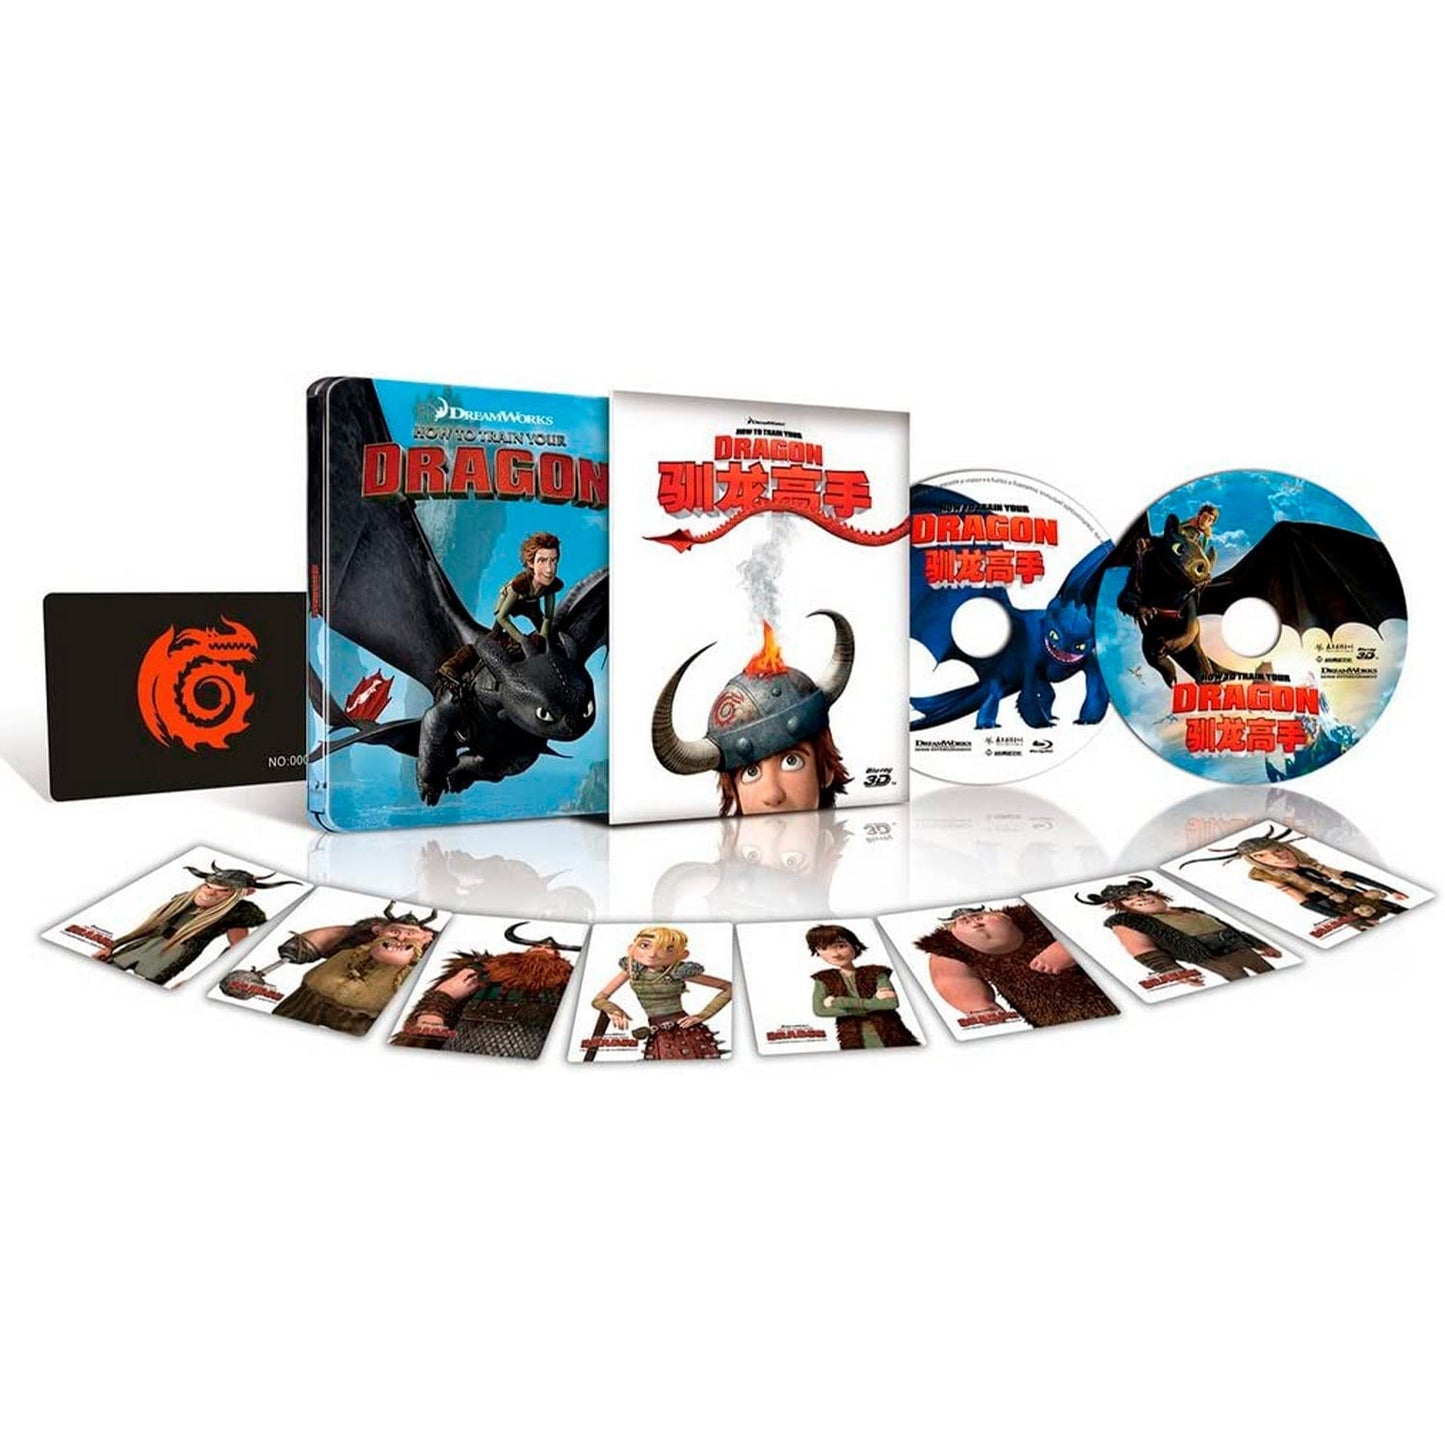 Как приручить дракона 3D (Blu-ray) Steelbook Lenticular Slipcover